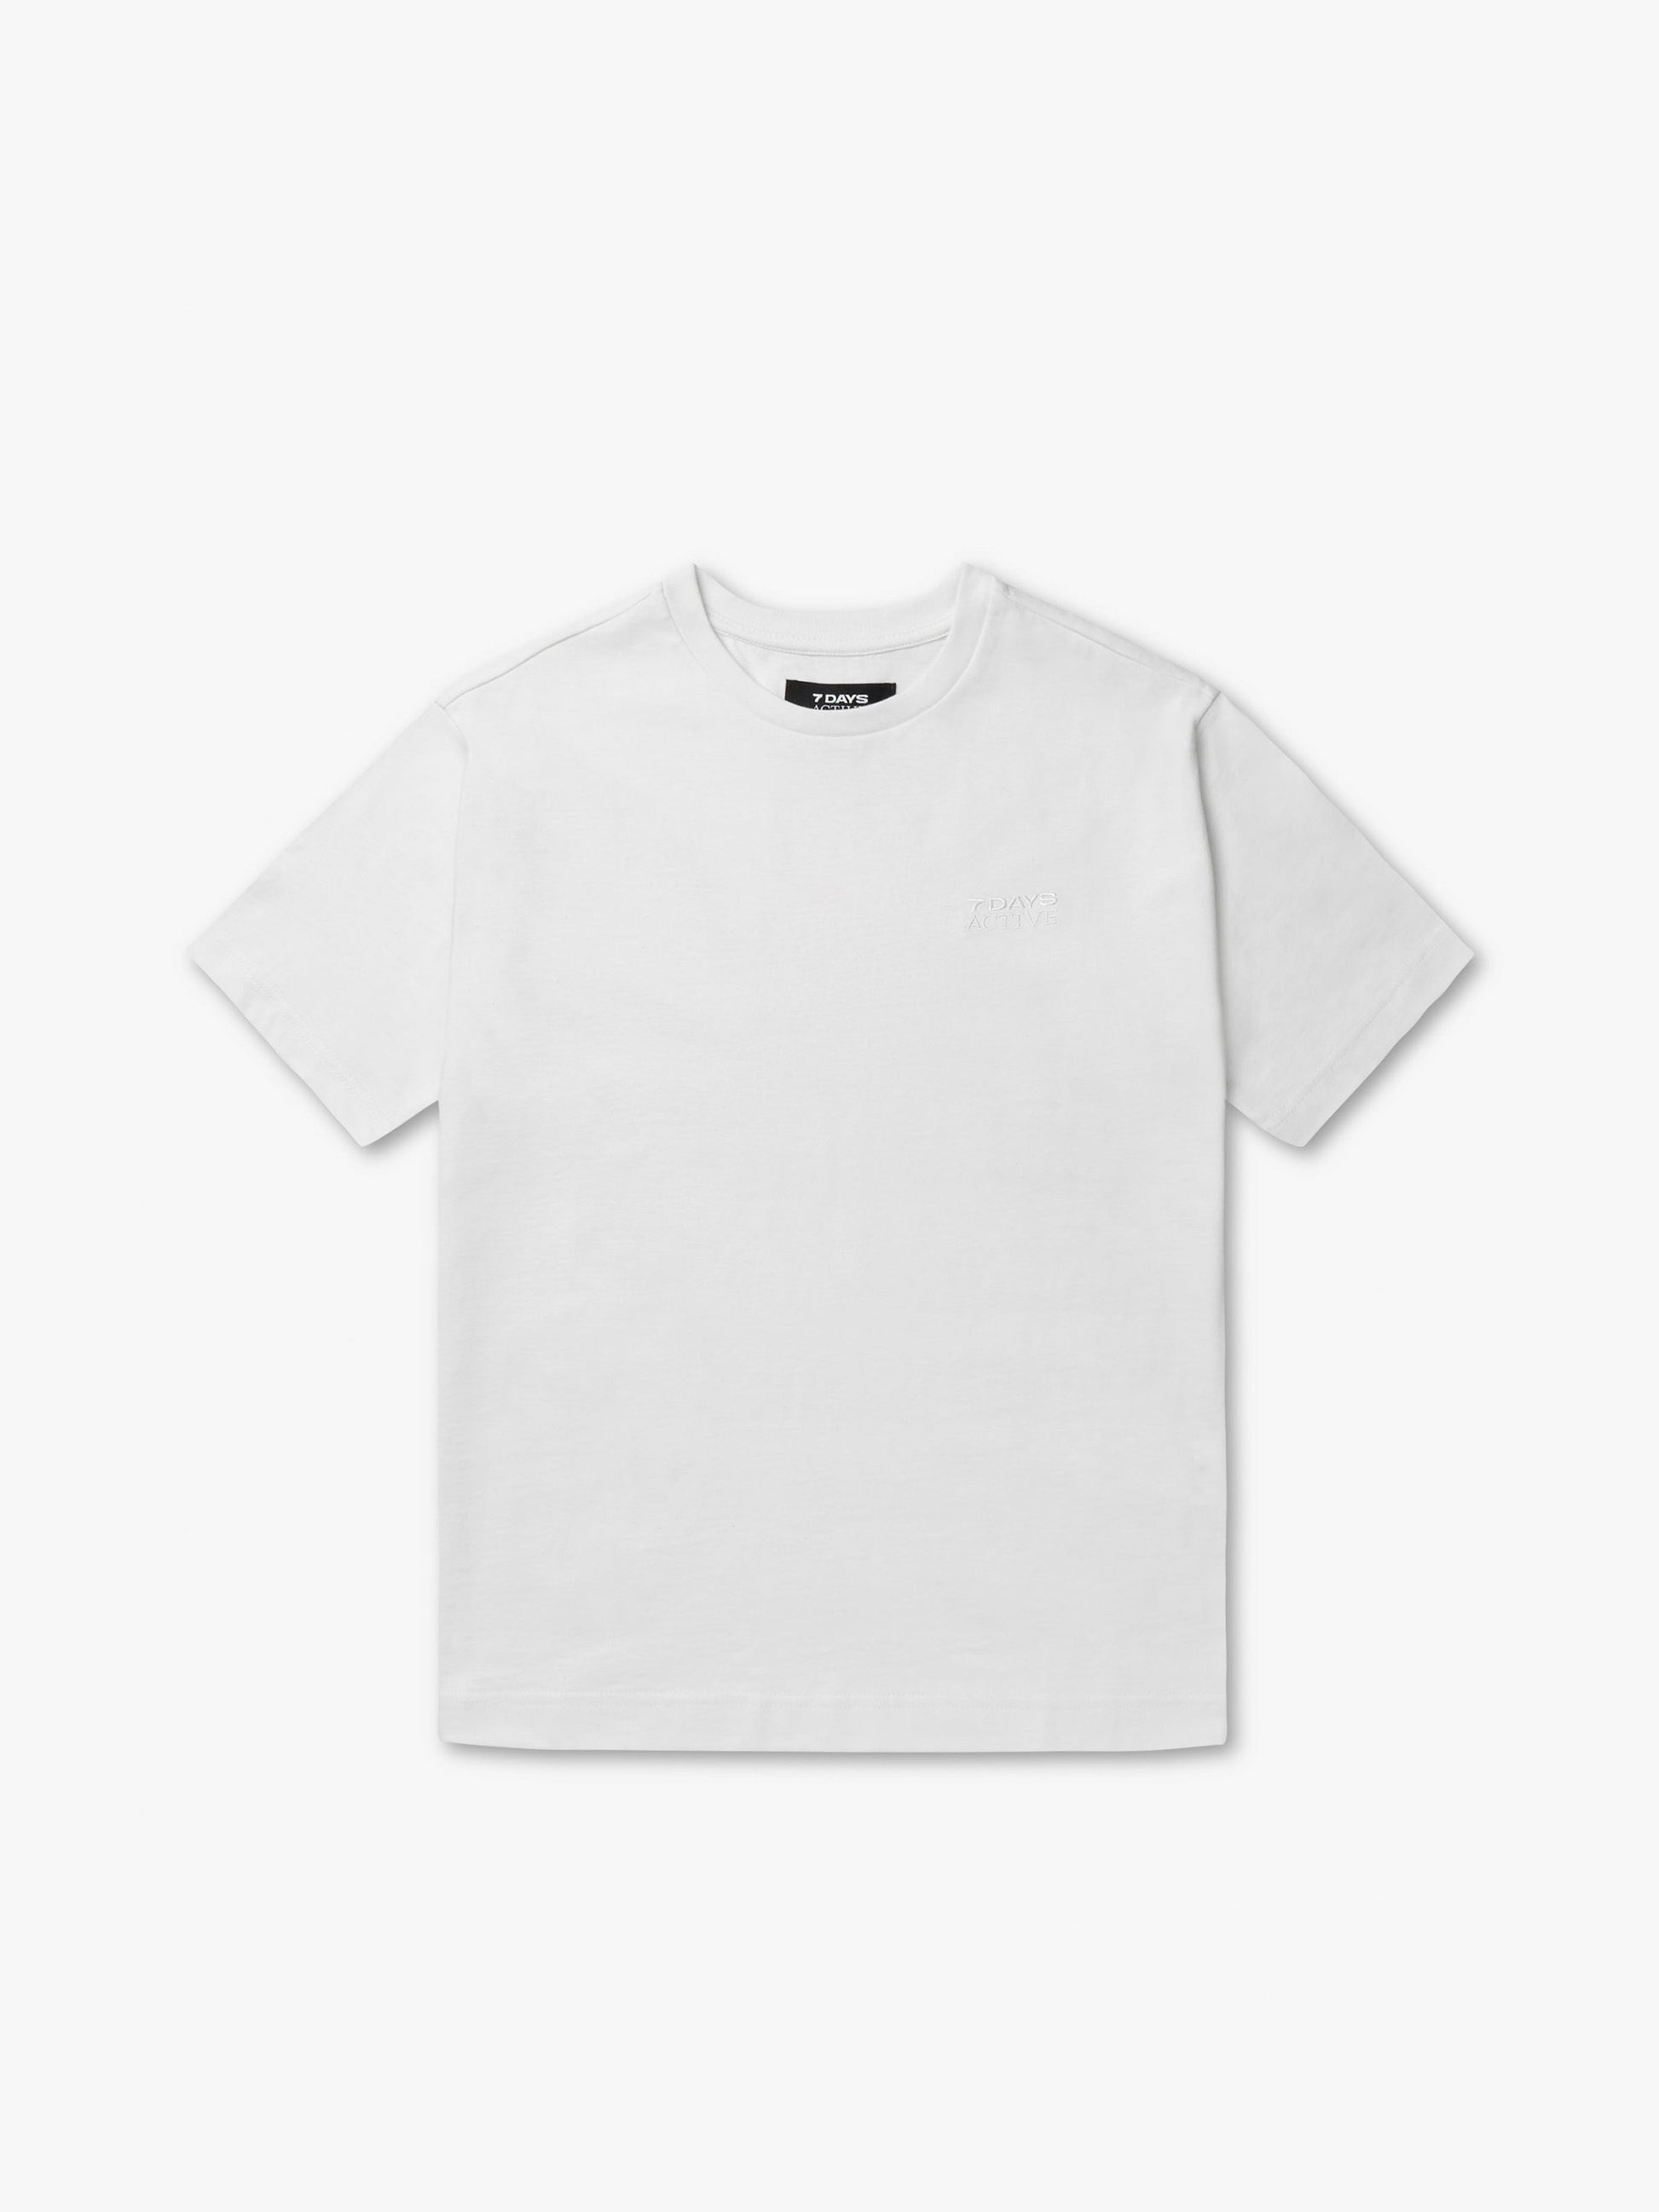 7 DAYS Organic Logo Fitted Tee T-shirt S/S 050 White Alyssum